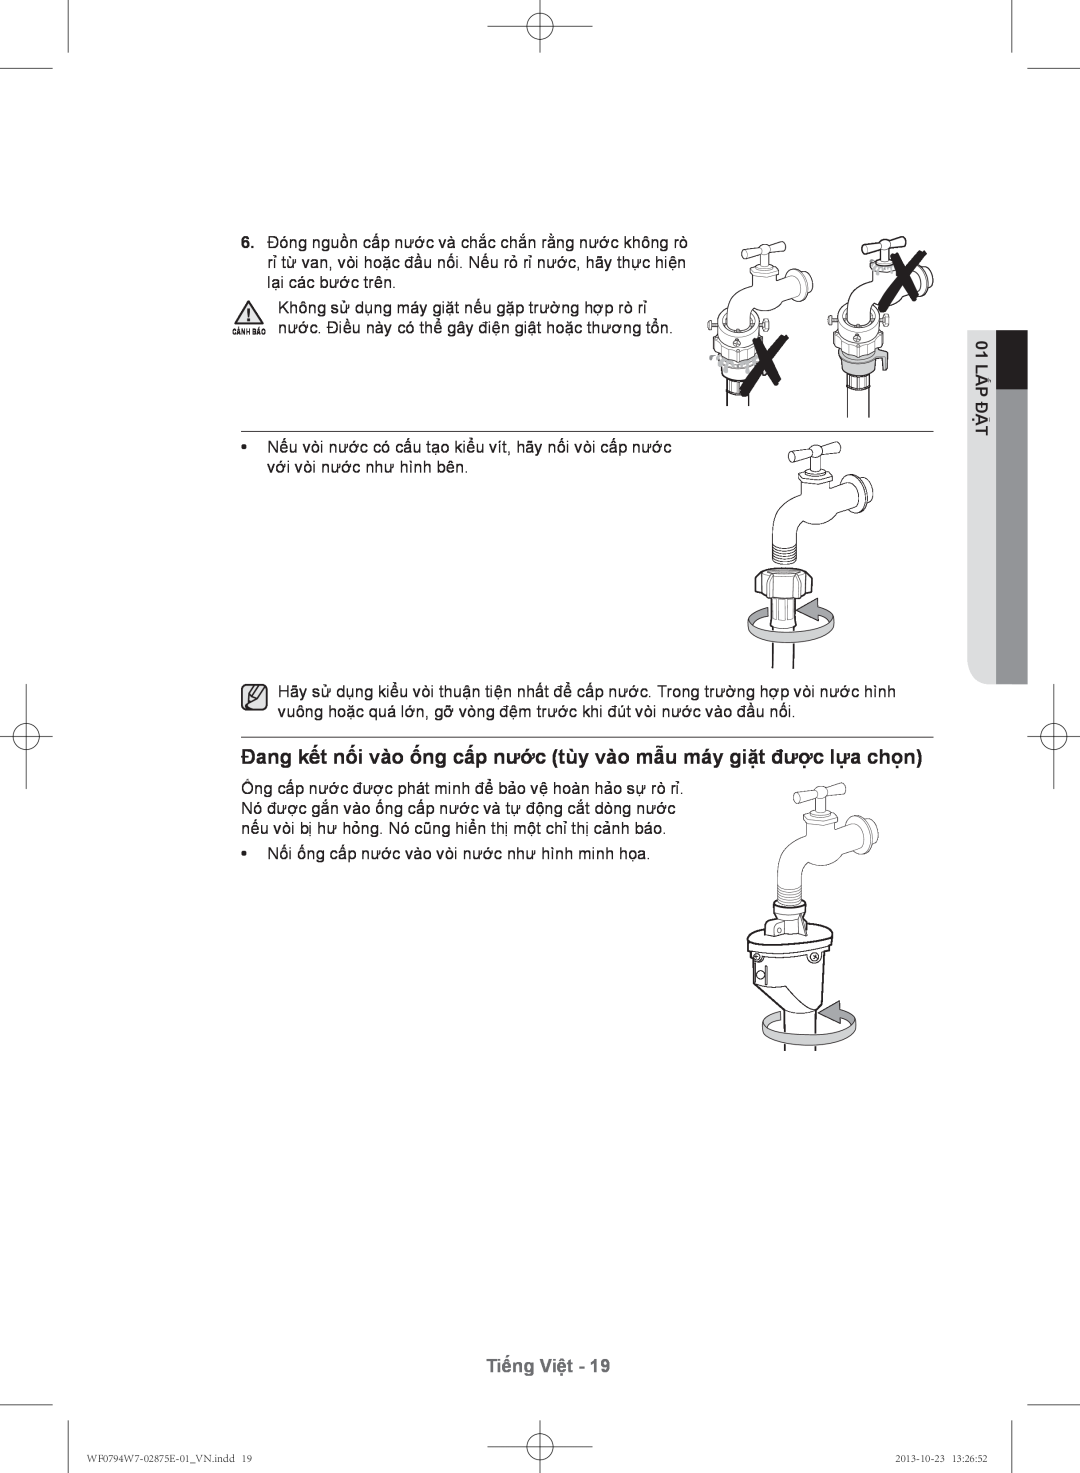 Samsung WF0794W7E9/XSV manual Đang kết nối vào ống cấp nước tùy vào mẫu máy giặt đượ̣c lựa chọ̣n, Tiếng Việt, 01 lắp đặt 